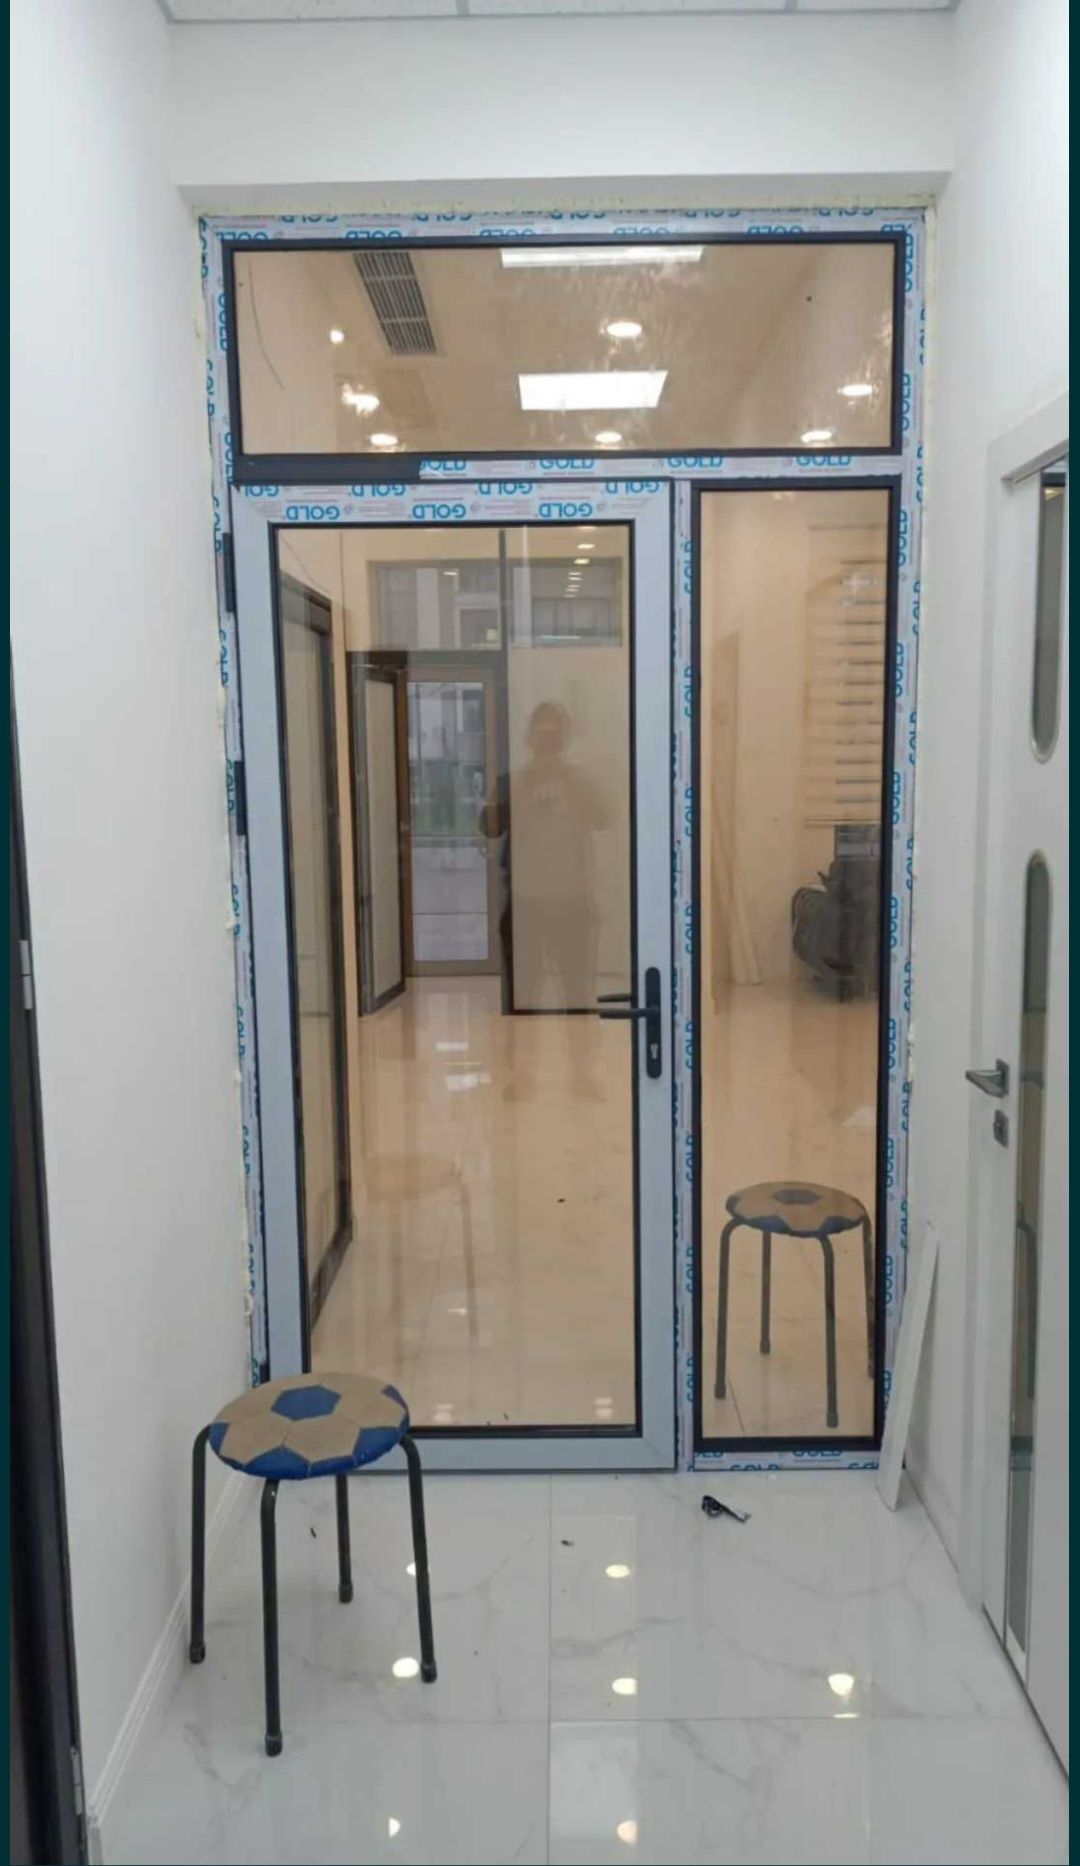 Пластиковые окна двери витражи Алматы 30000 тыс сервис, гарантия